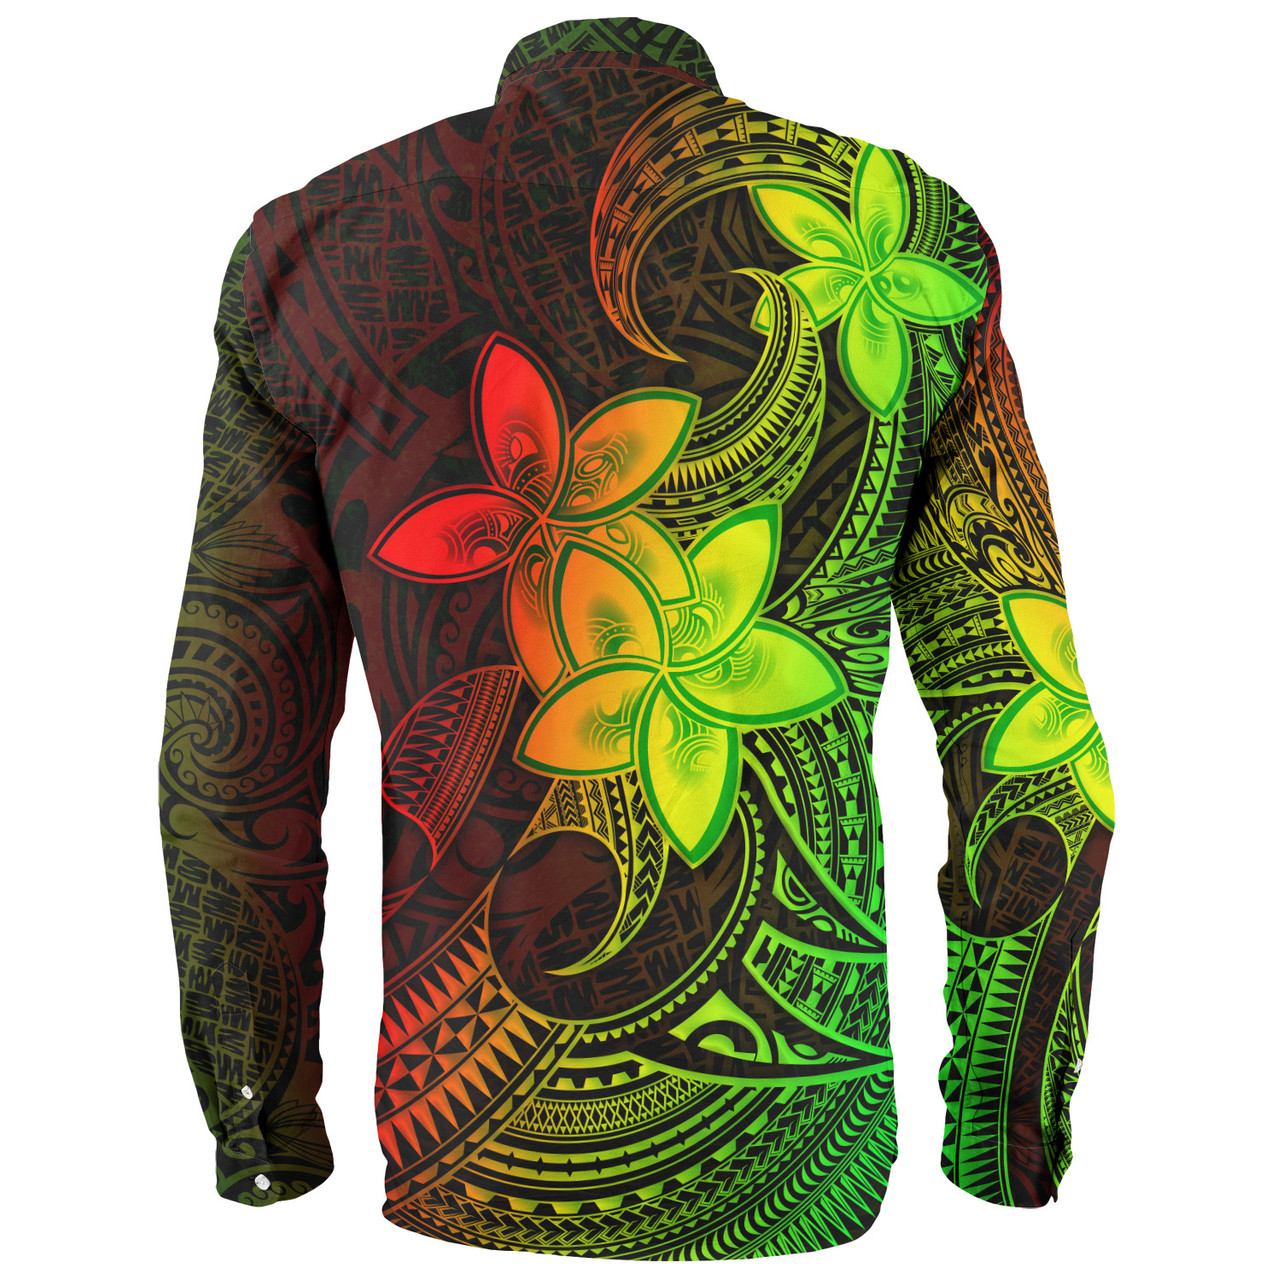 Tahiti Long Sleeve Shirt Plumeria Flowers Vintage Style Reggae Colors